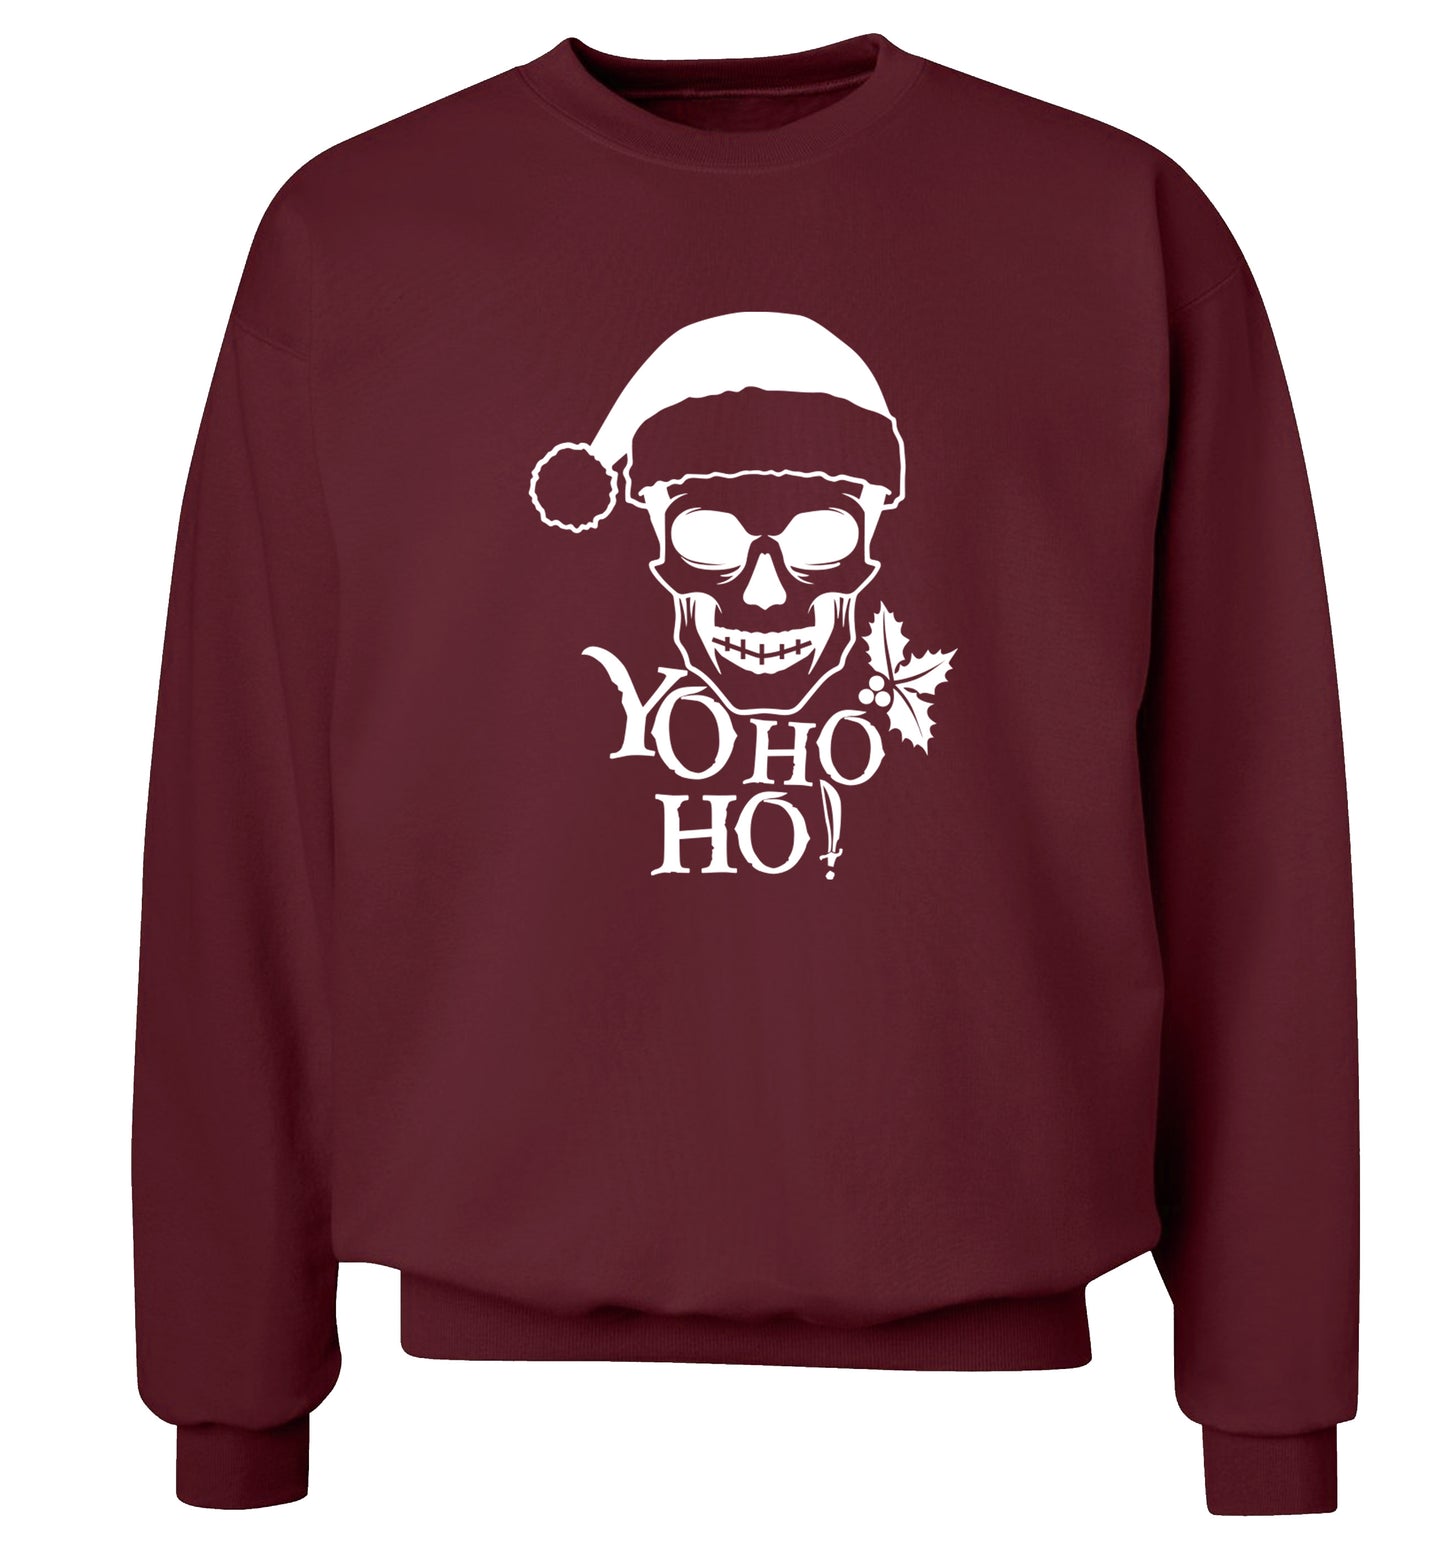 Yo ho ho! Adult's unisex maroon Sweater 2XL